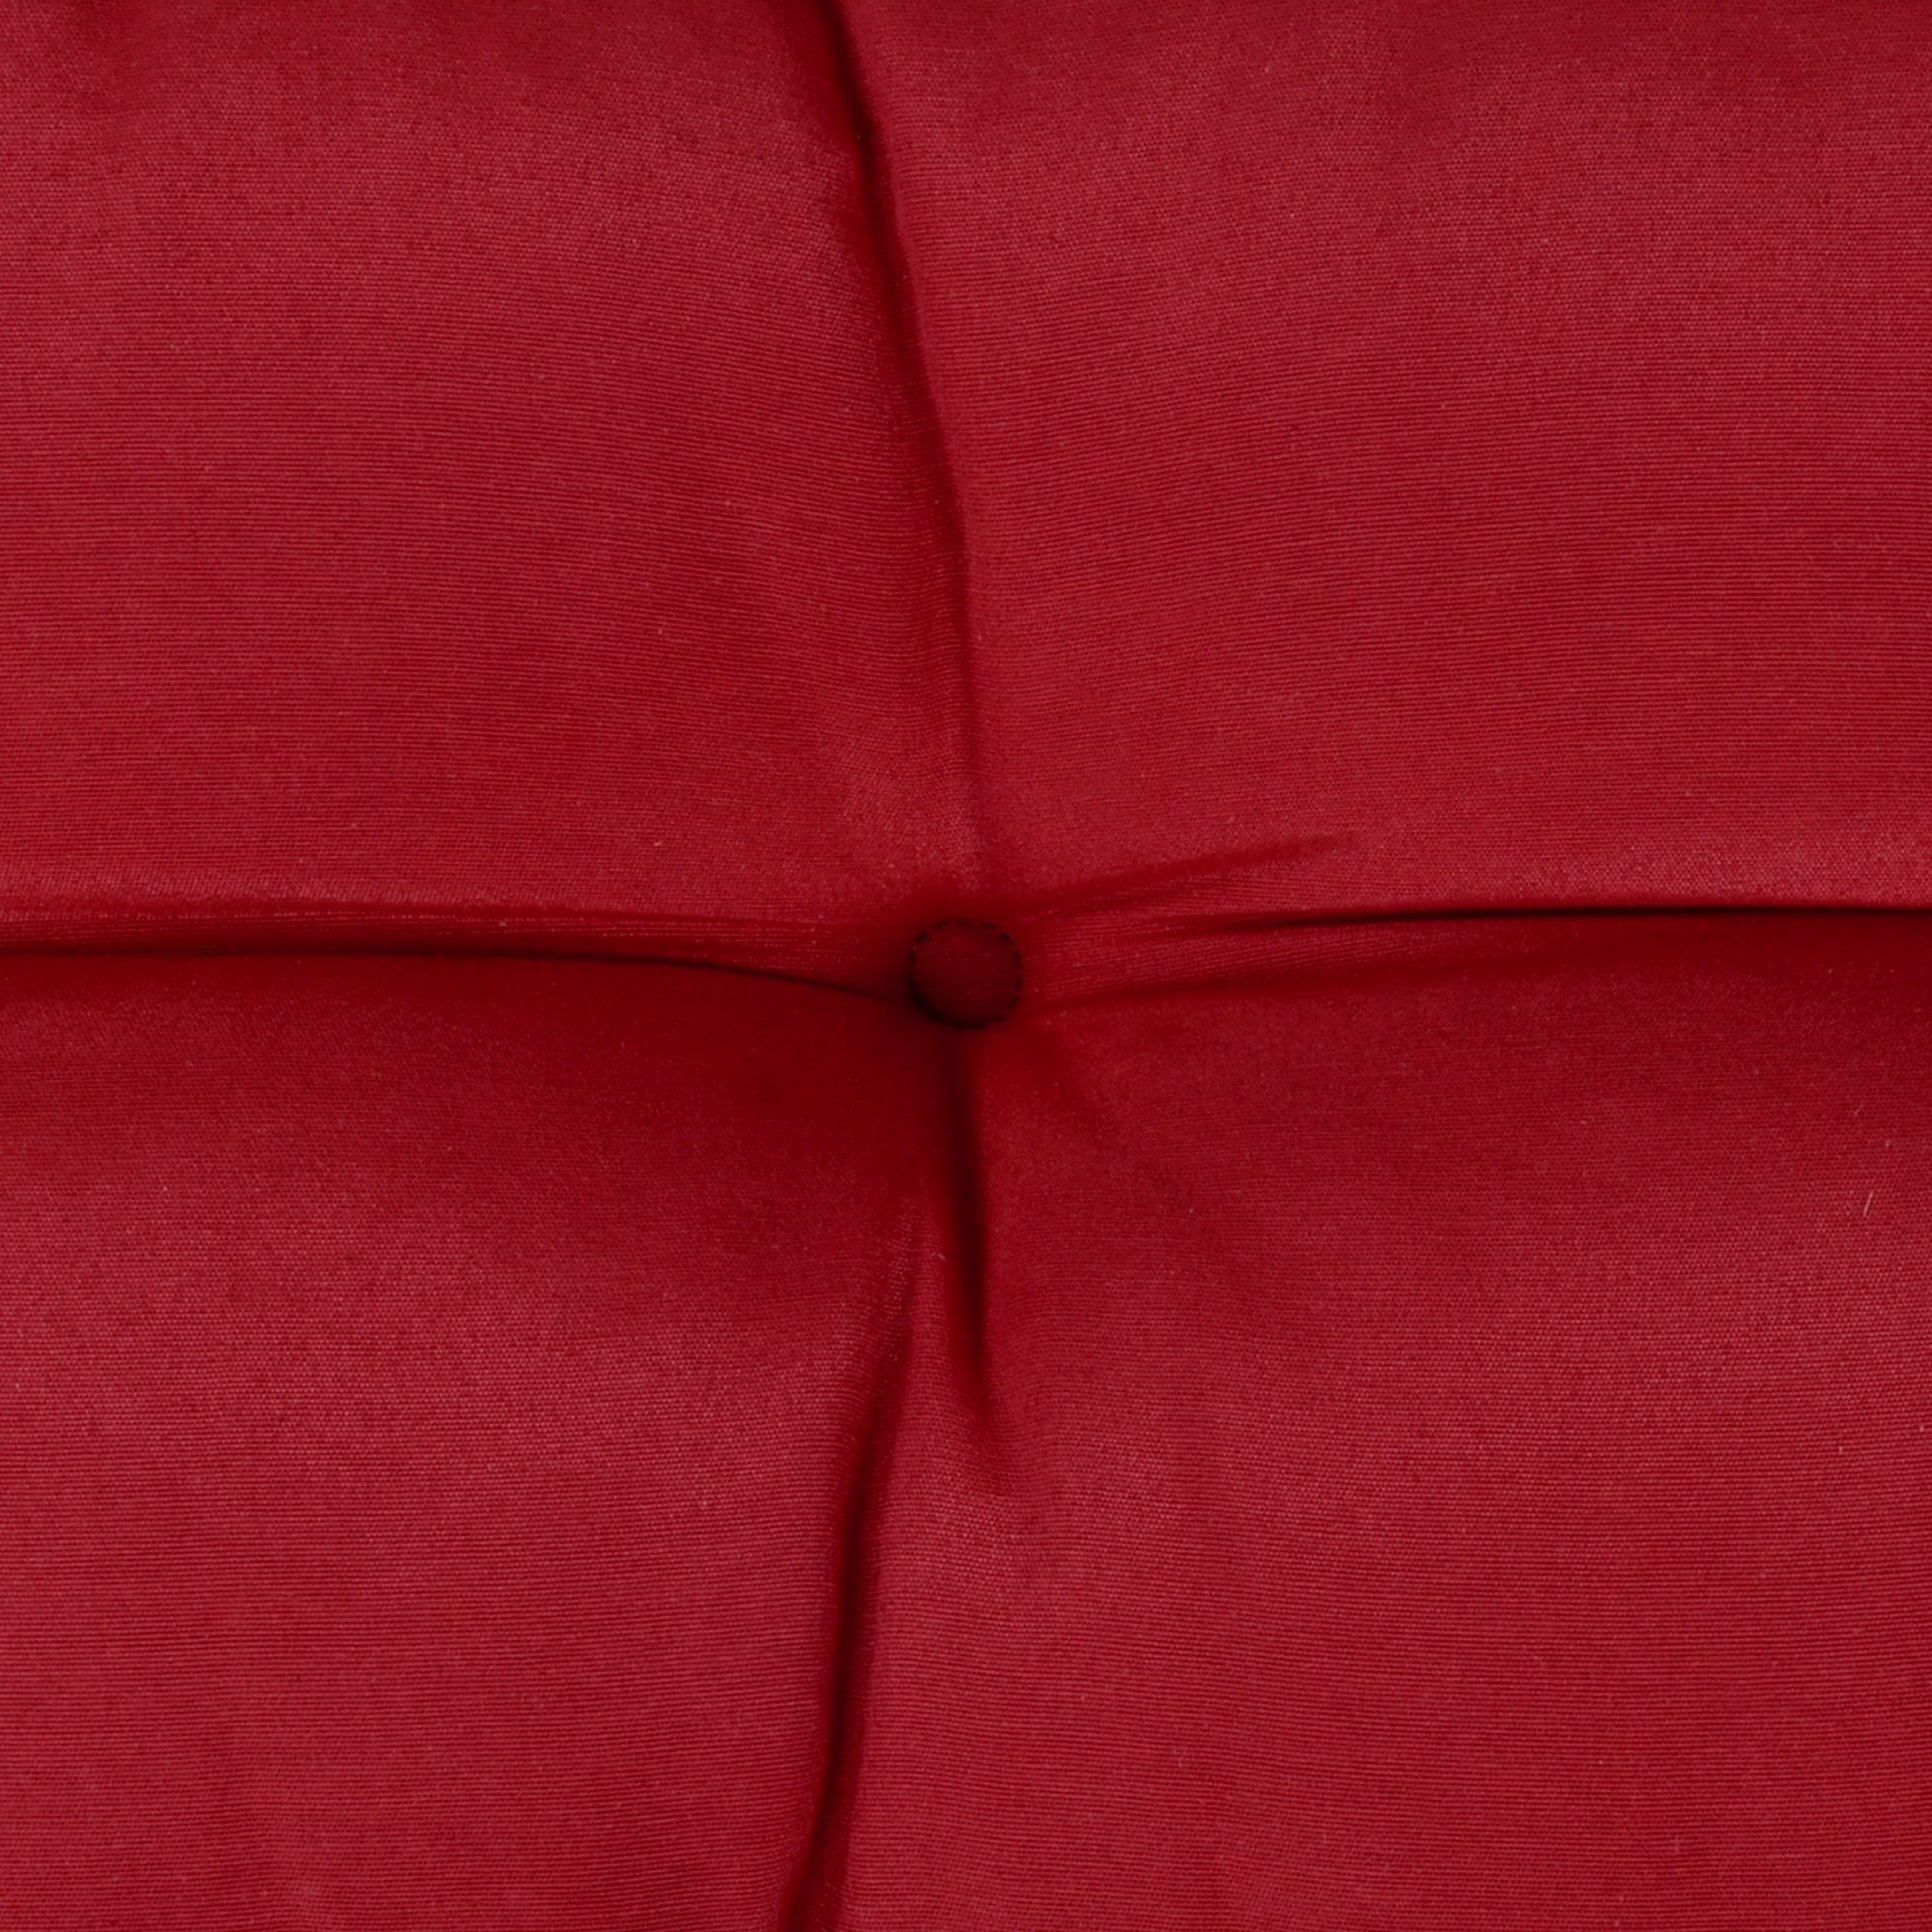 Palettenkissen Sitzkissen Style, Rot Beautissu Rücken 120x40x20cm